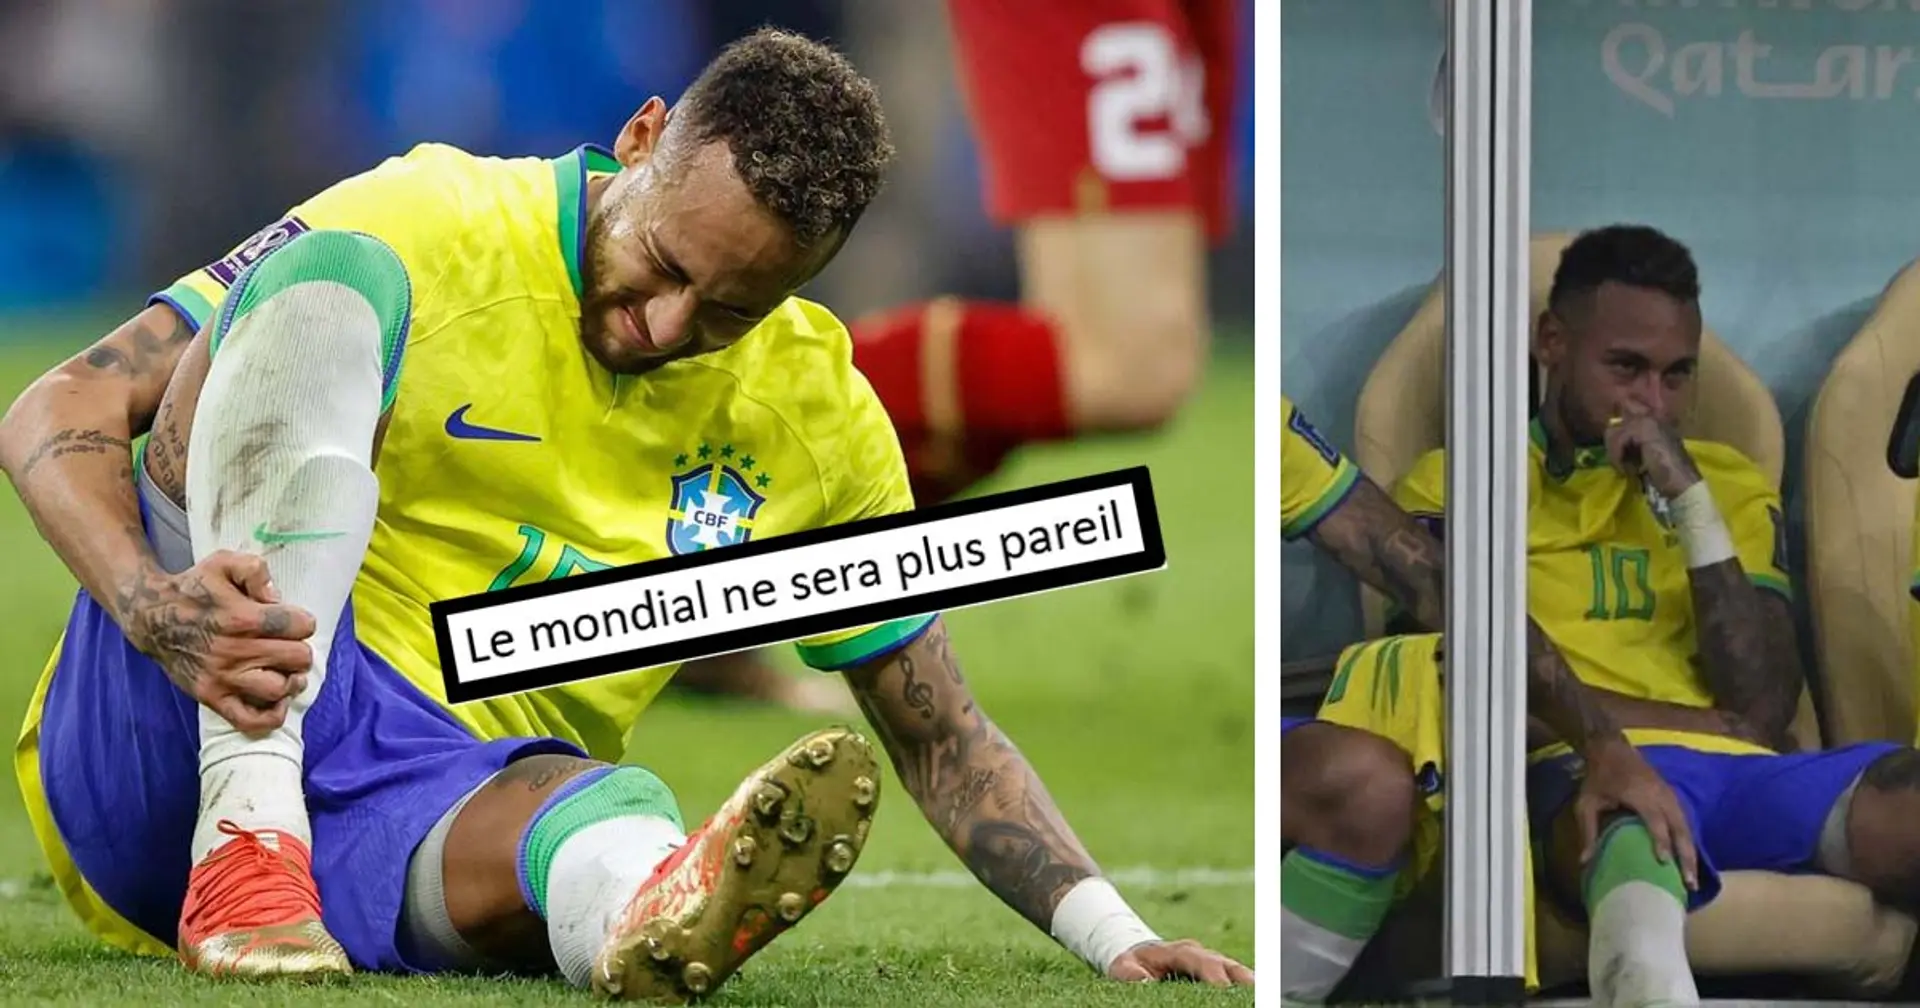 "Tu te relèveras toujours", les fans témoignent leur soutien à Neymar après sa blessure 